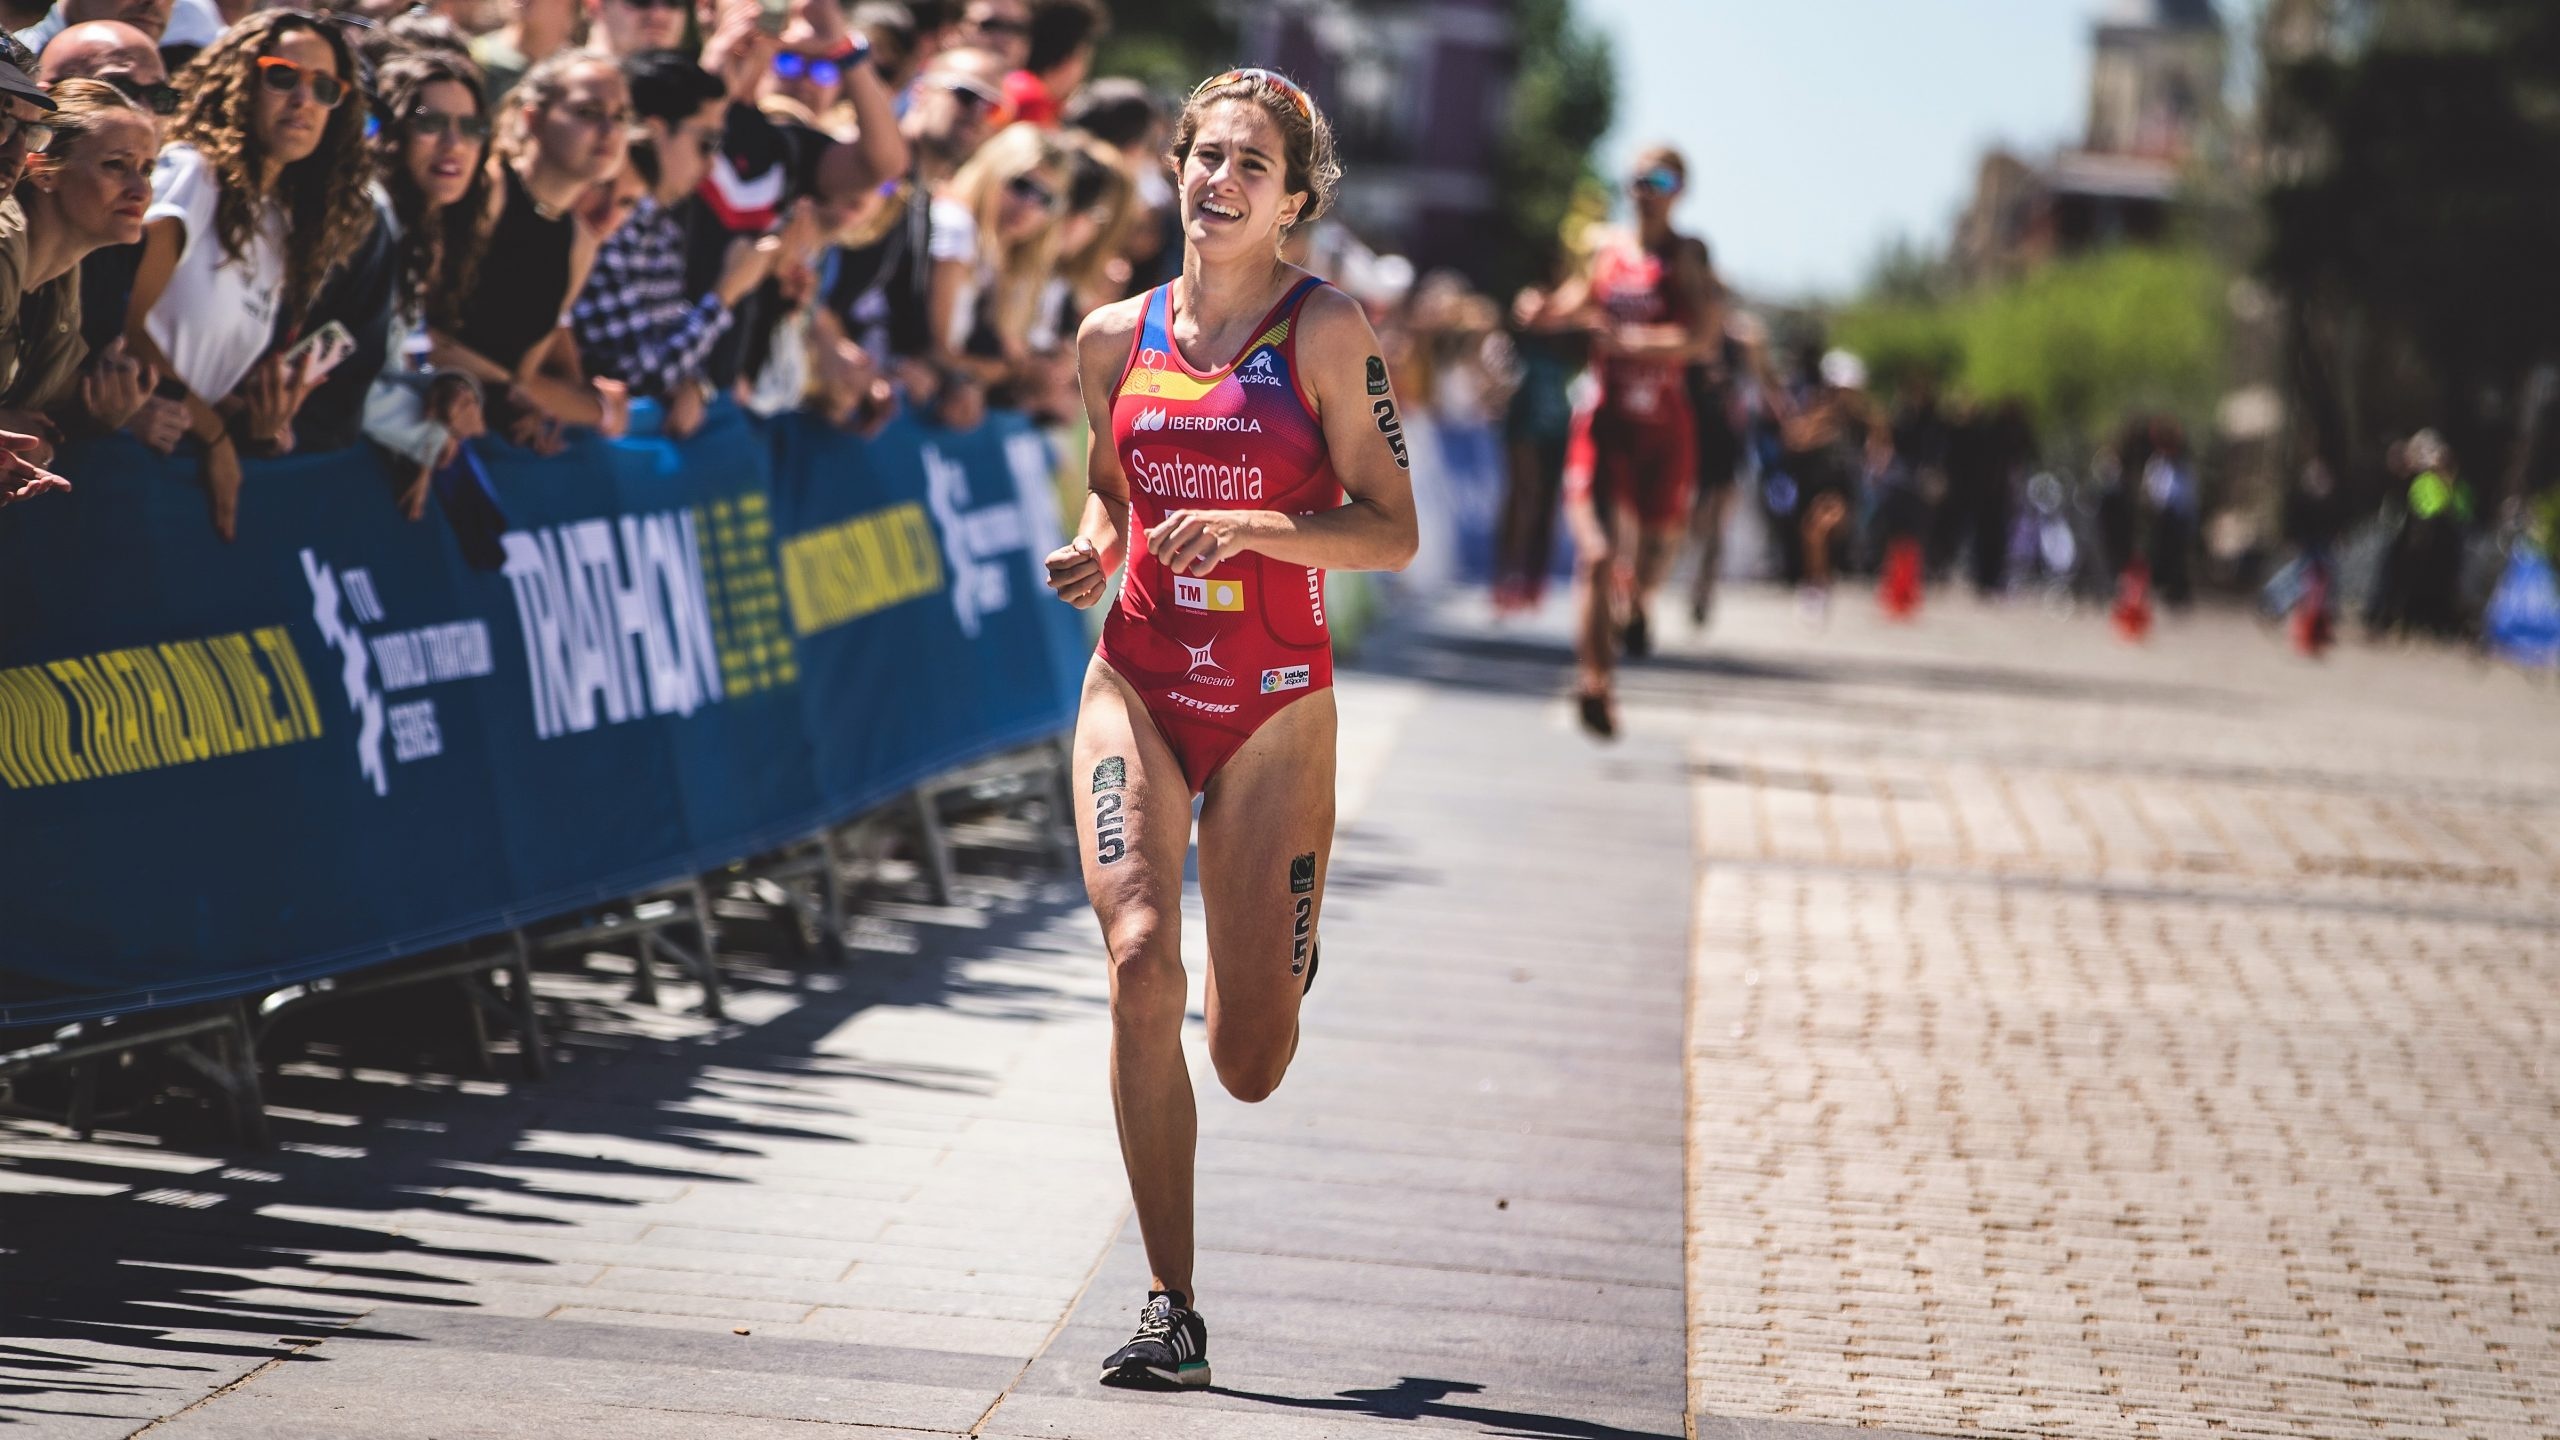 Marathon: Cecilia Santamaria Surroca, Coimbra Triathlon European Cup 2021, A long-distance running. 2560x1440 HD Wallpaper.